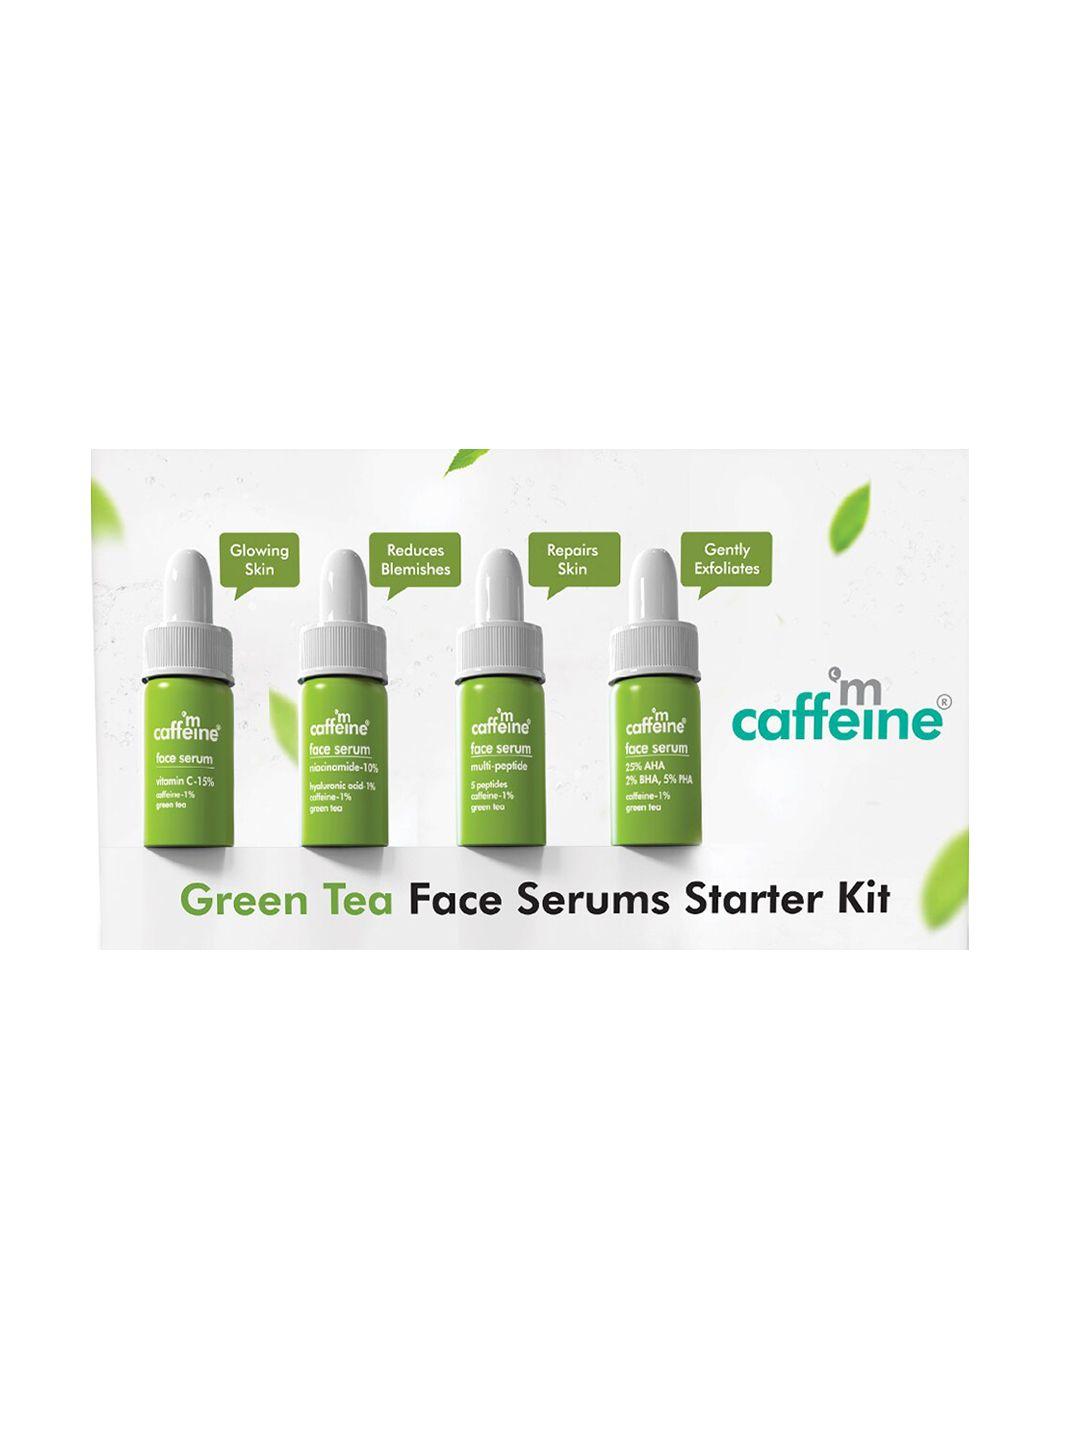 mcaffeine miniature green tea face serums starter kit - 3ml each